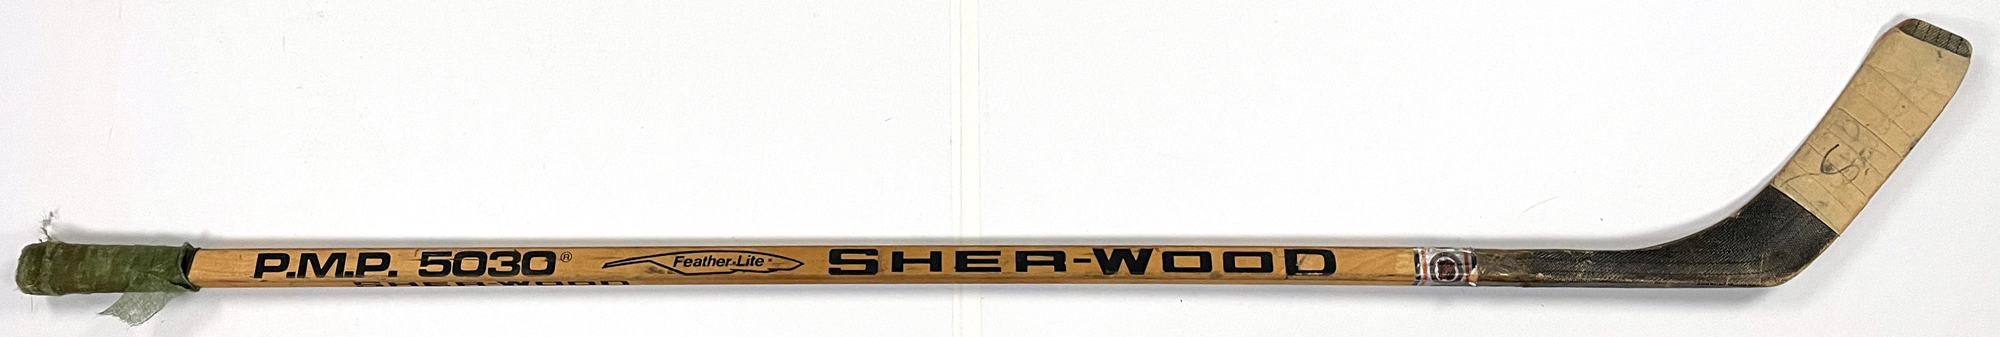 Sher-Wood Vintage Goalie Leg Pads